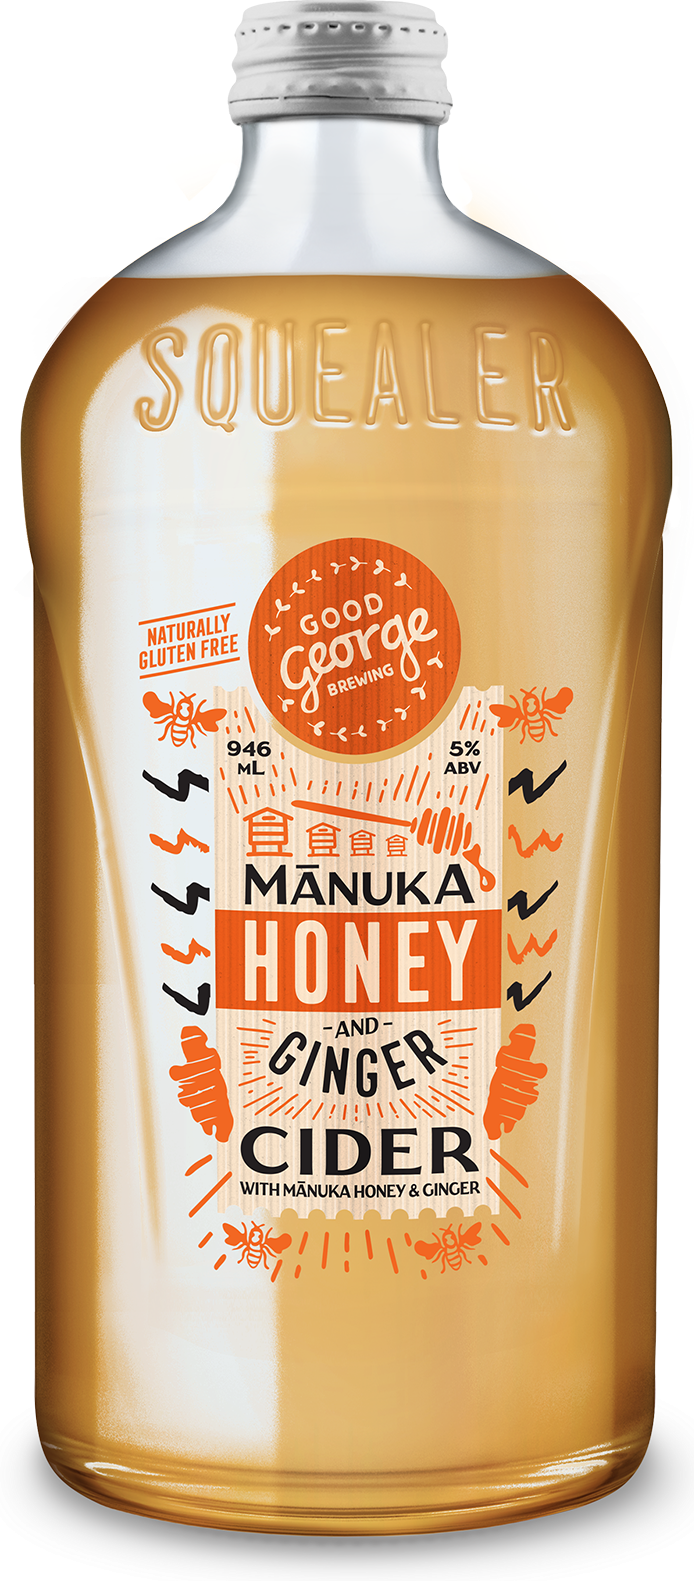 Good George Manuka Honey and Ginger Cider Squealer